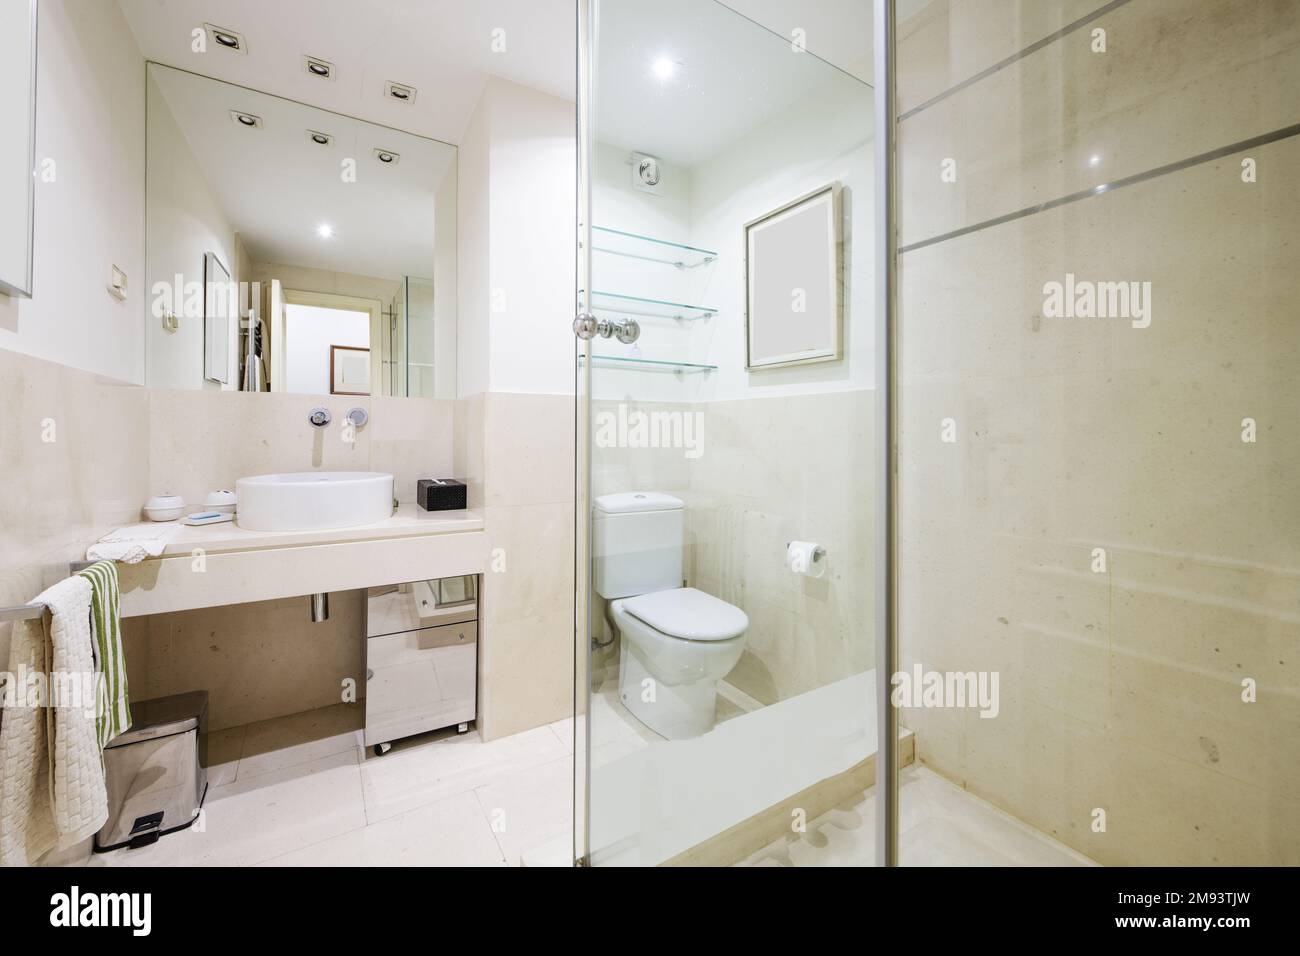 Belle salle de bains avec carrelage en marbre blanc avec miroir intégré au mur et toilettes en porcelaine, appliques murales dans le faux plafond, étagère en verre Banque D'Images